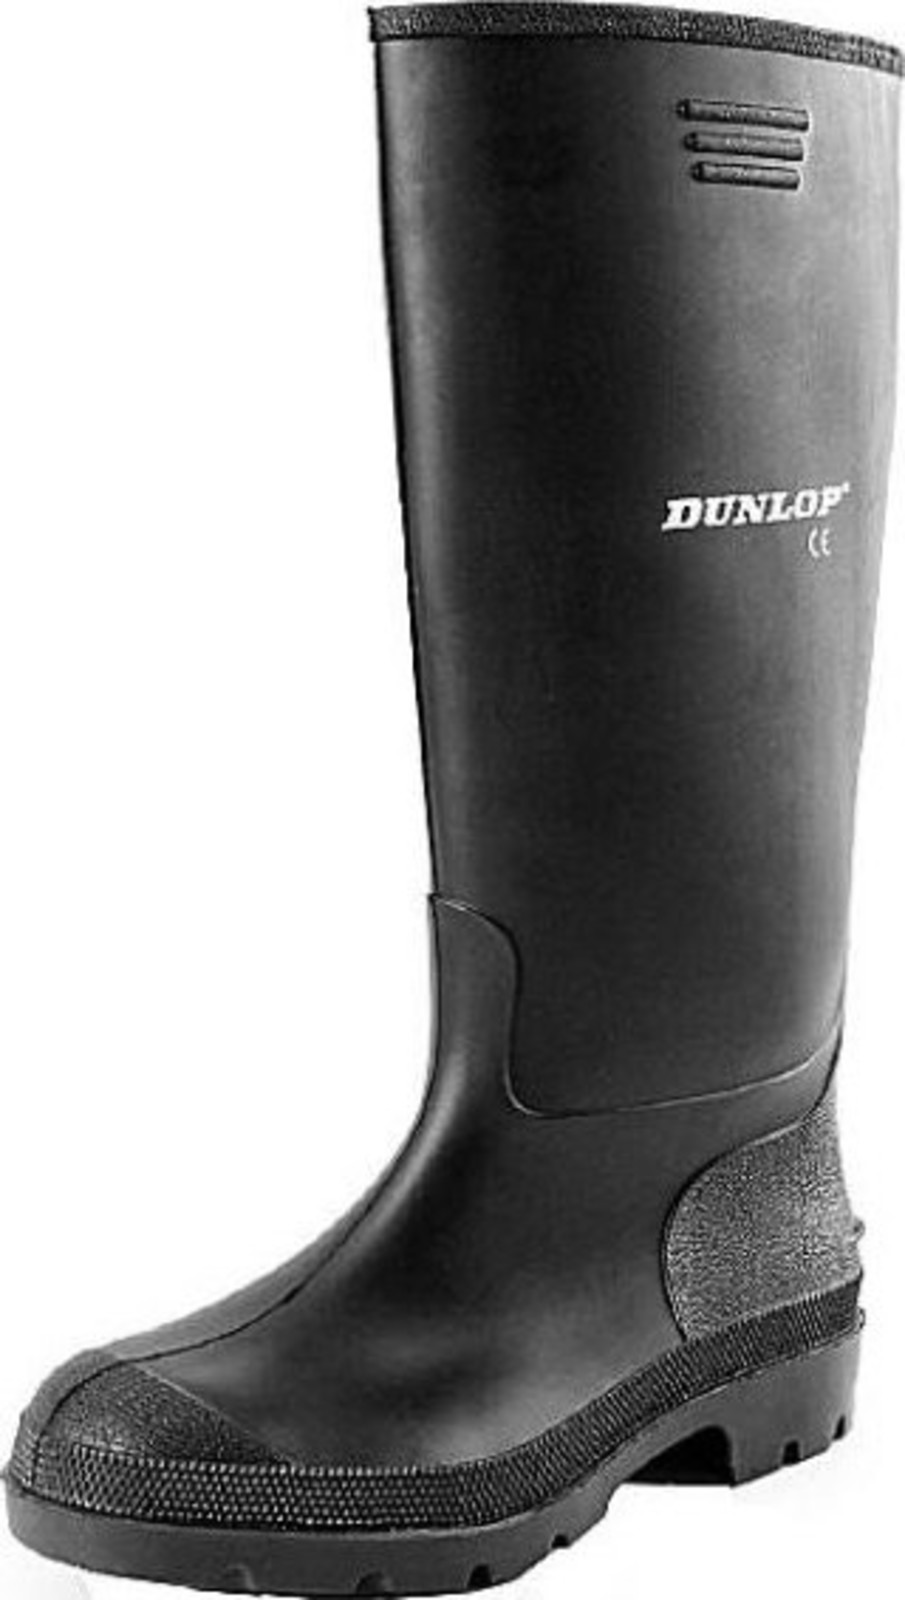 Gumáky Dunlop Preismeister PVC - veľkosť: 44, farba: čierna